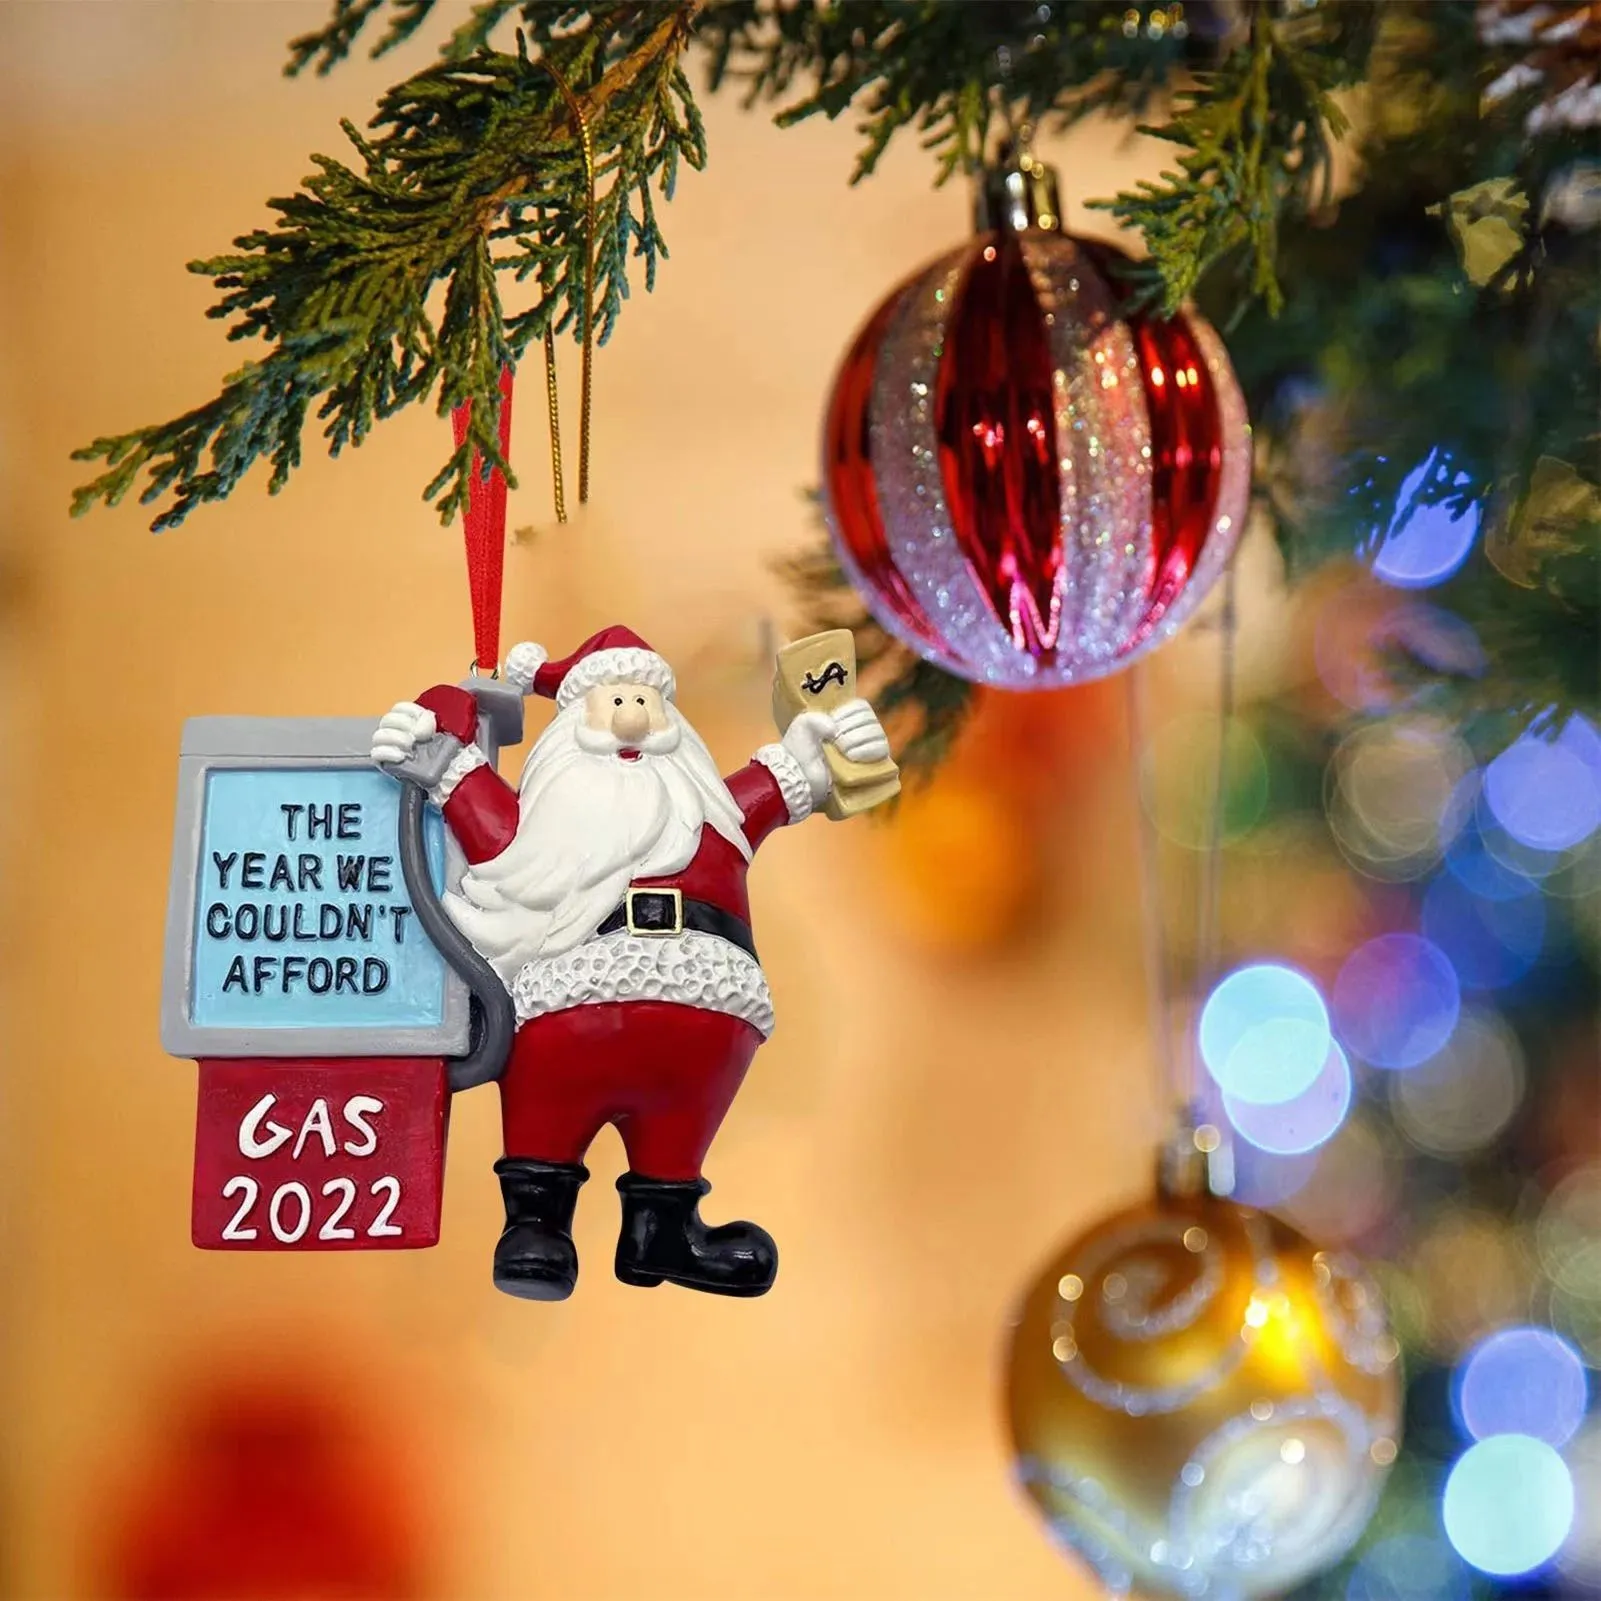 Noël jouet drôle noël père noël ornements l'année nous ne pouvions pas nous permettre de gaz nouvel an arbre suspendu pendentif décoration